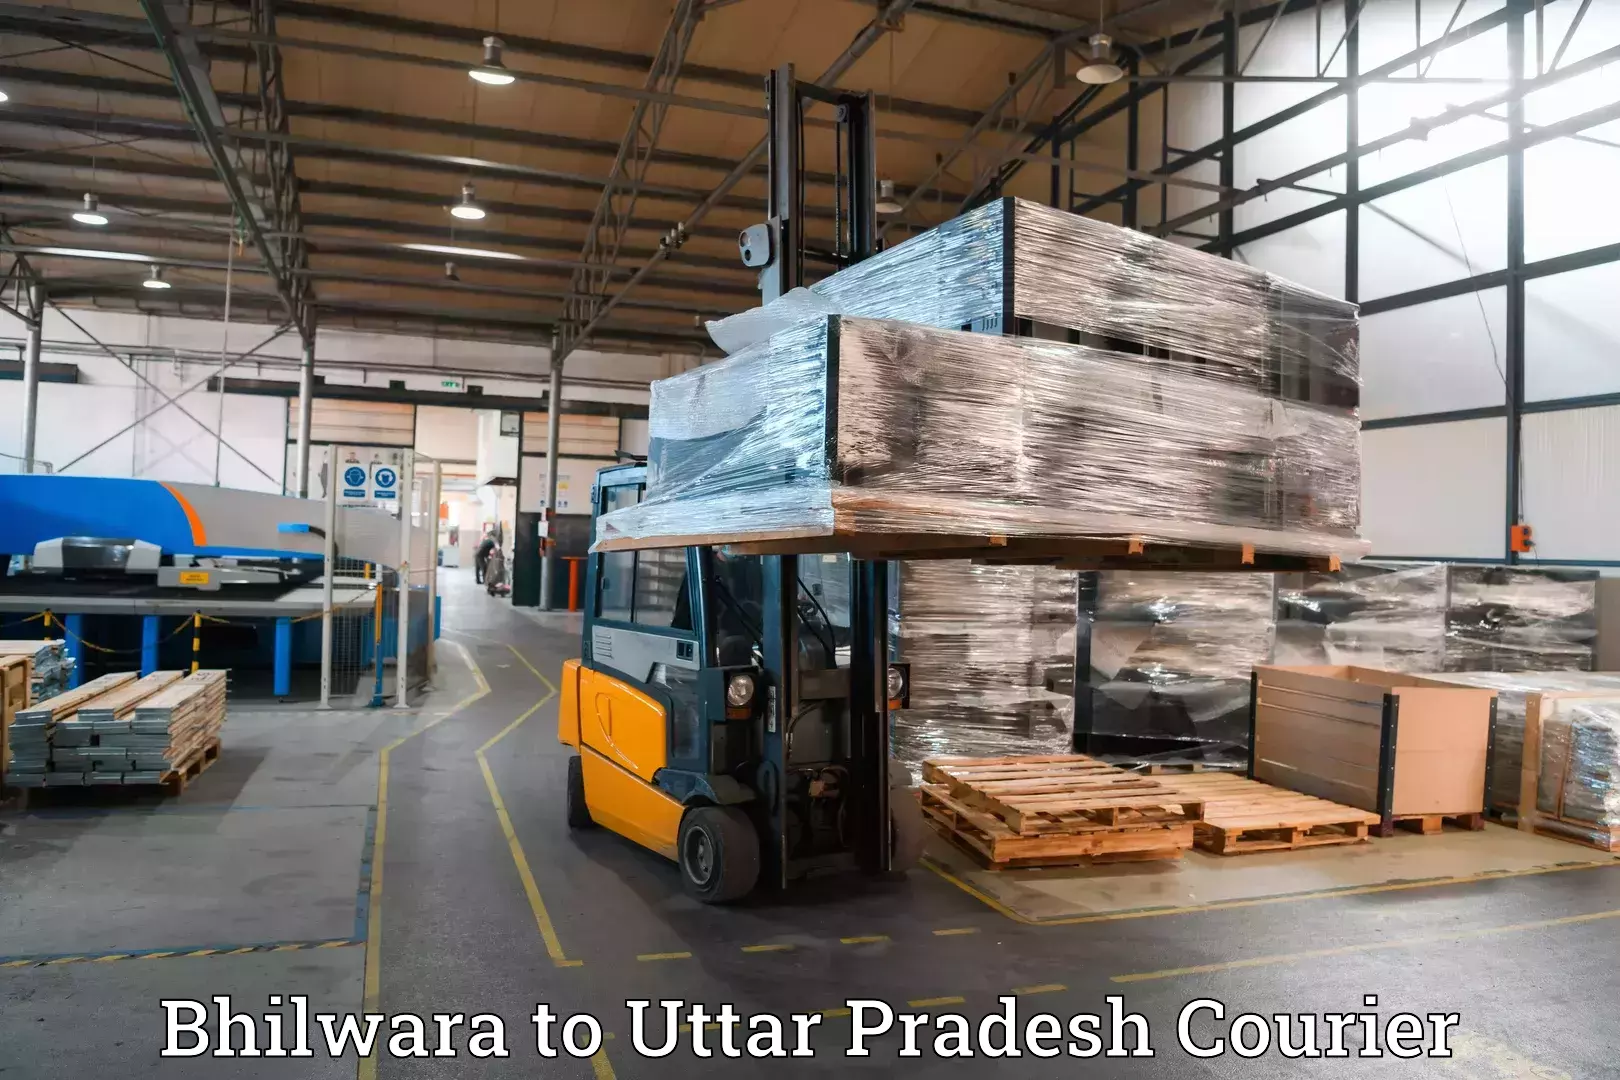 Luggage transit service Bhilwara to Uttar Pradesh